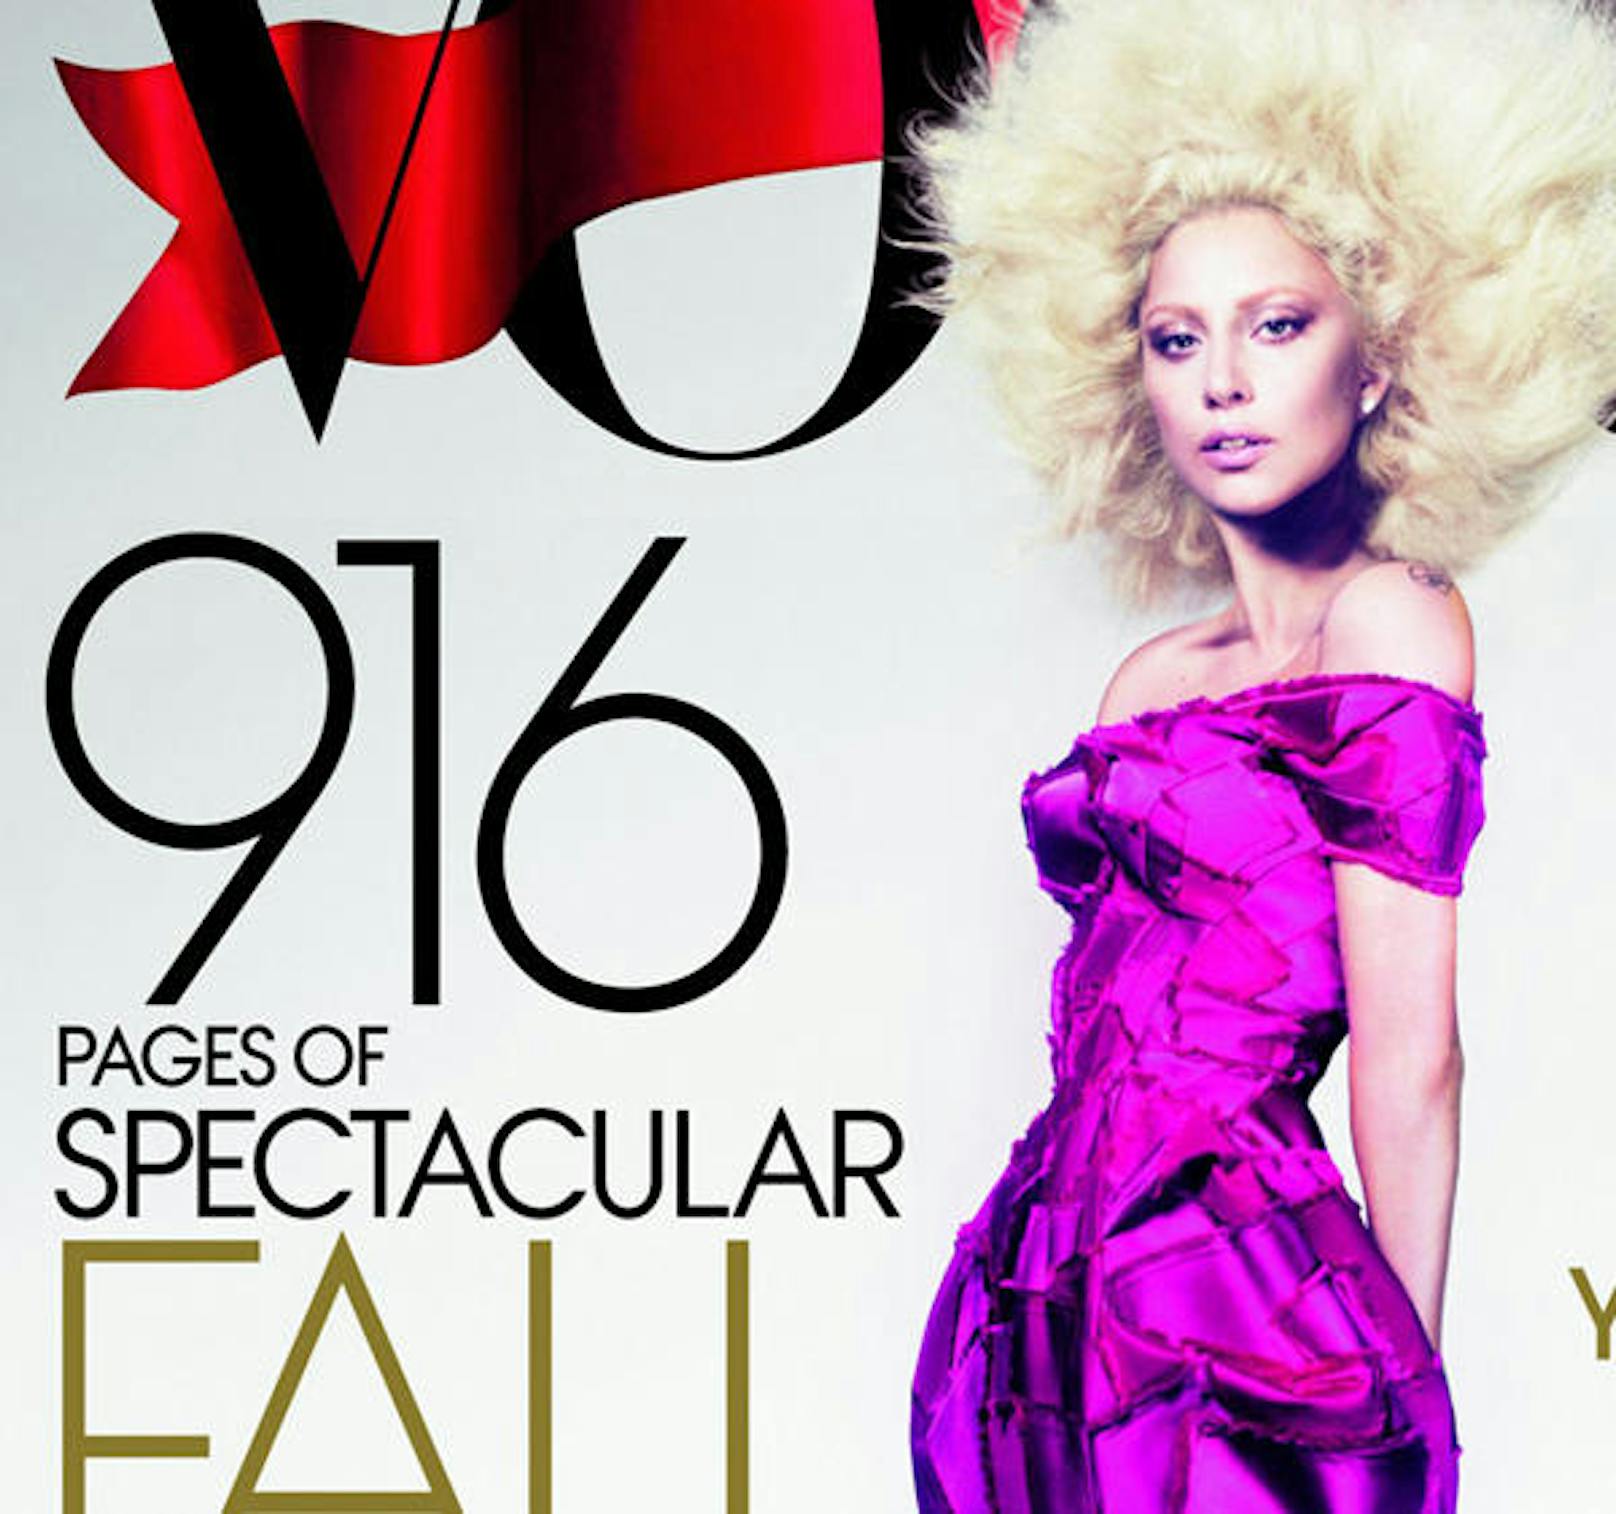 Auf ihrem ersten "Vogue" Cover 2012 war sie mit blondem Afro und pinkem Make-Up zu sehen. Mehr Gemälde als Foto.